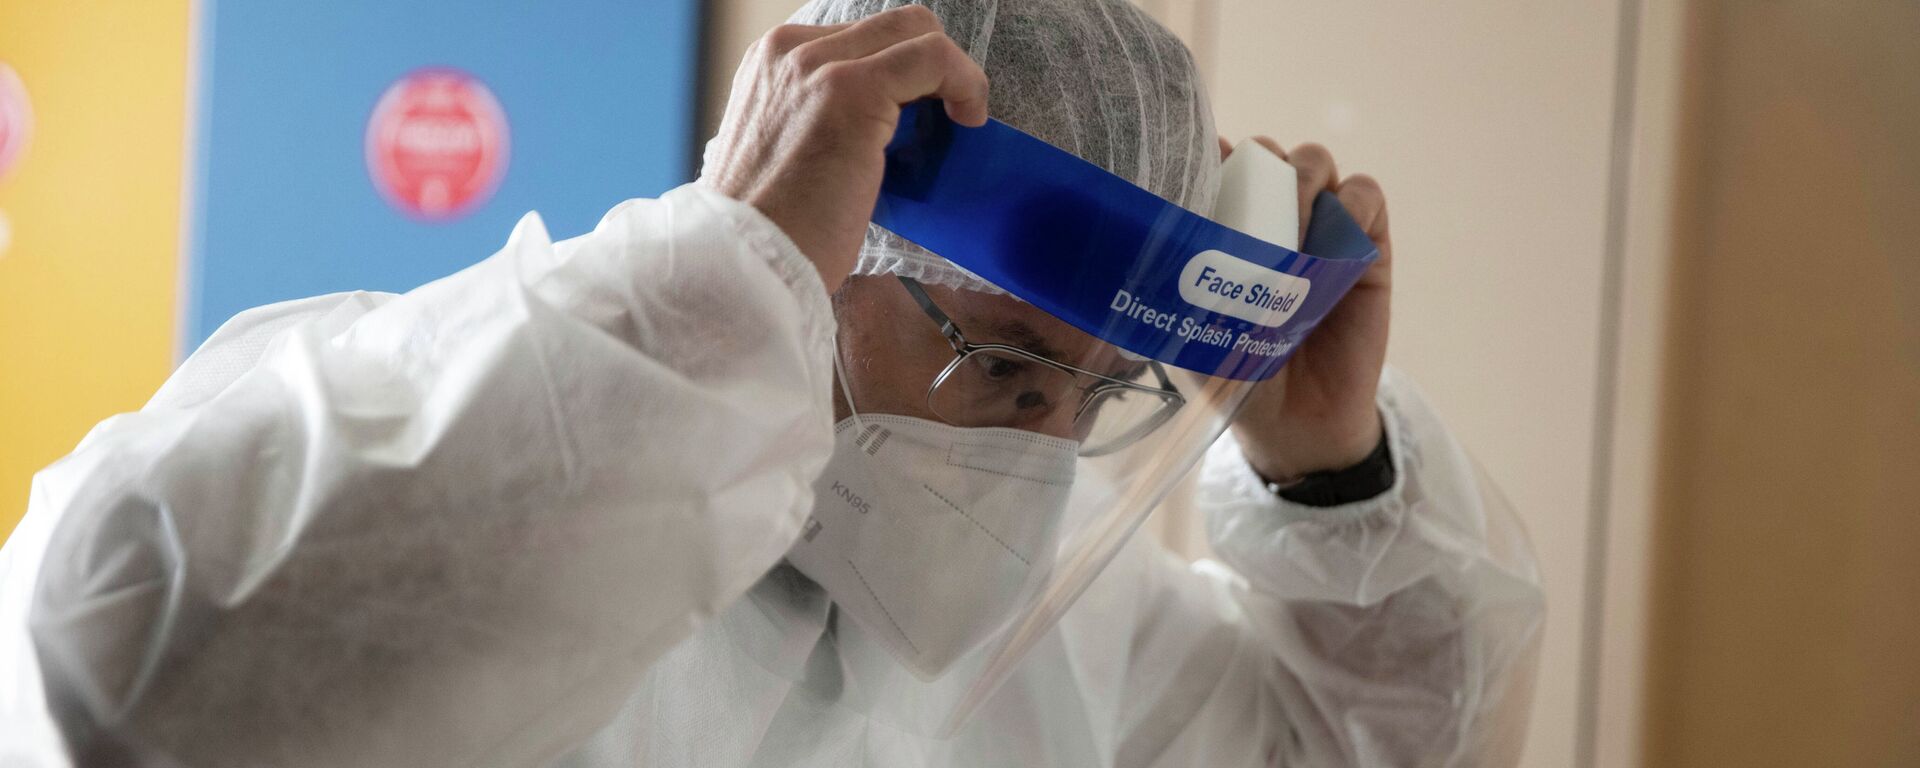 Врач поправляет защитный лицевой щиток перед началом смены в больнице с коронавирусом  - Sputnik Казахстан, 1920, 31.03.2021